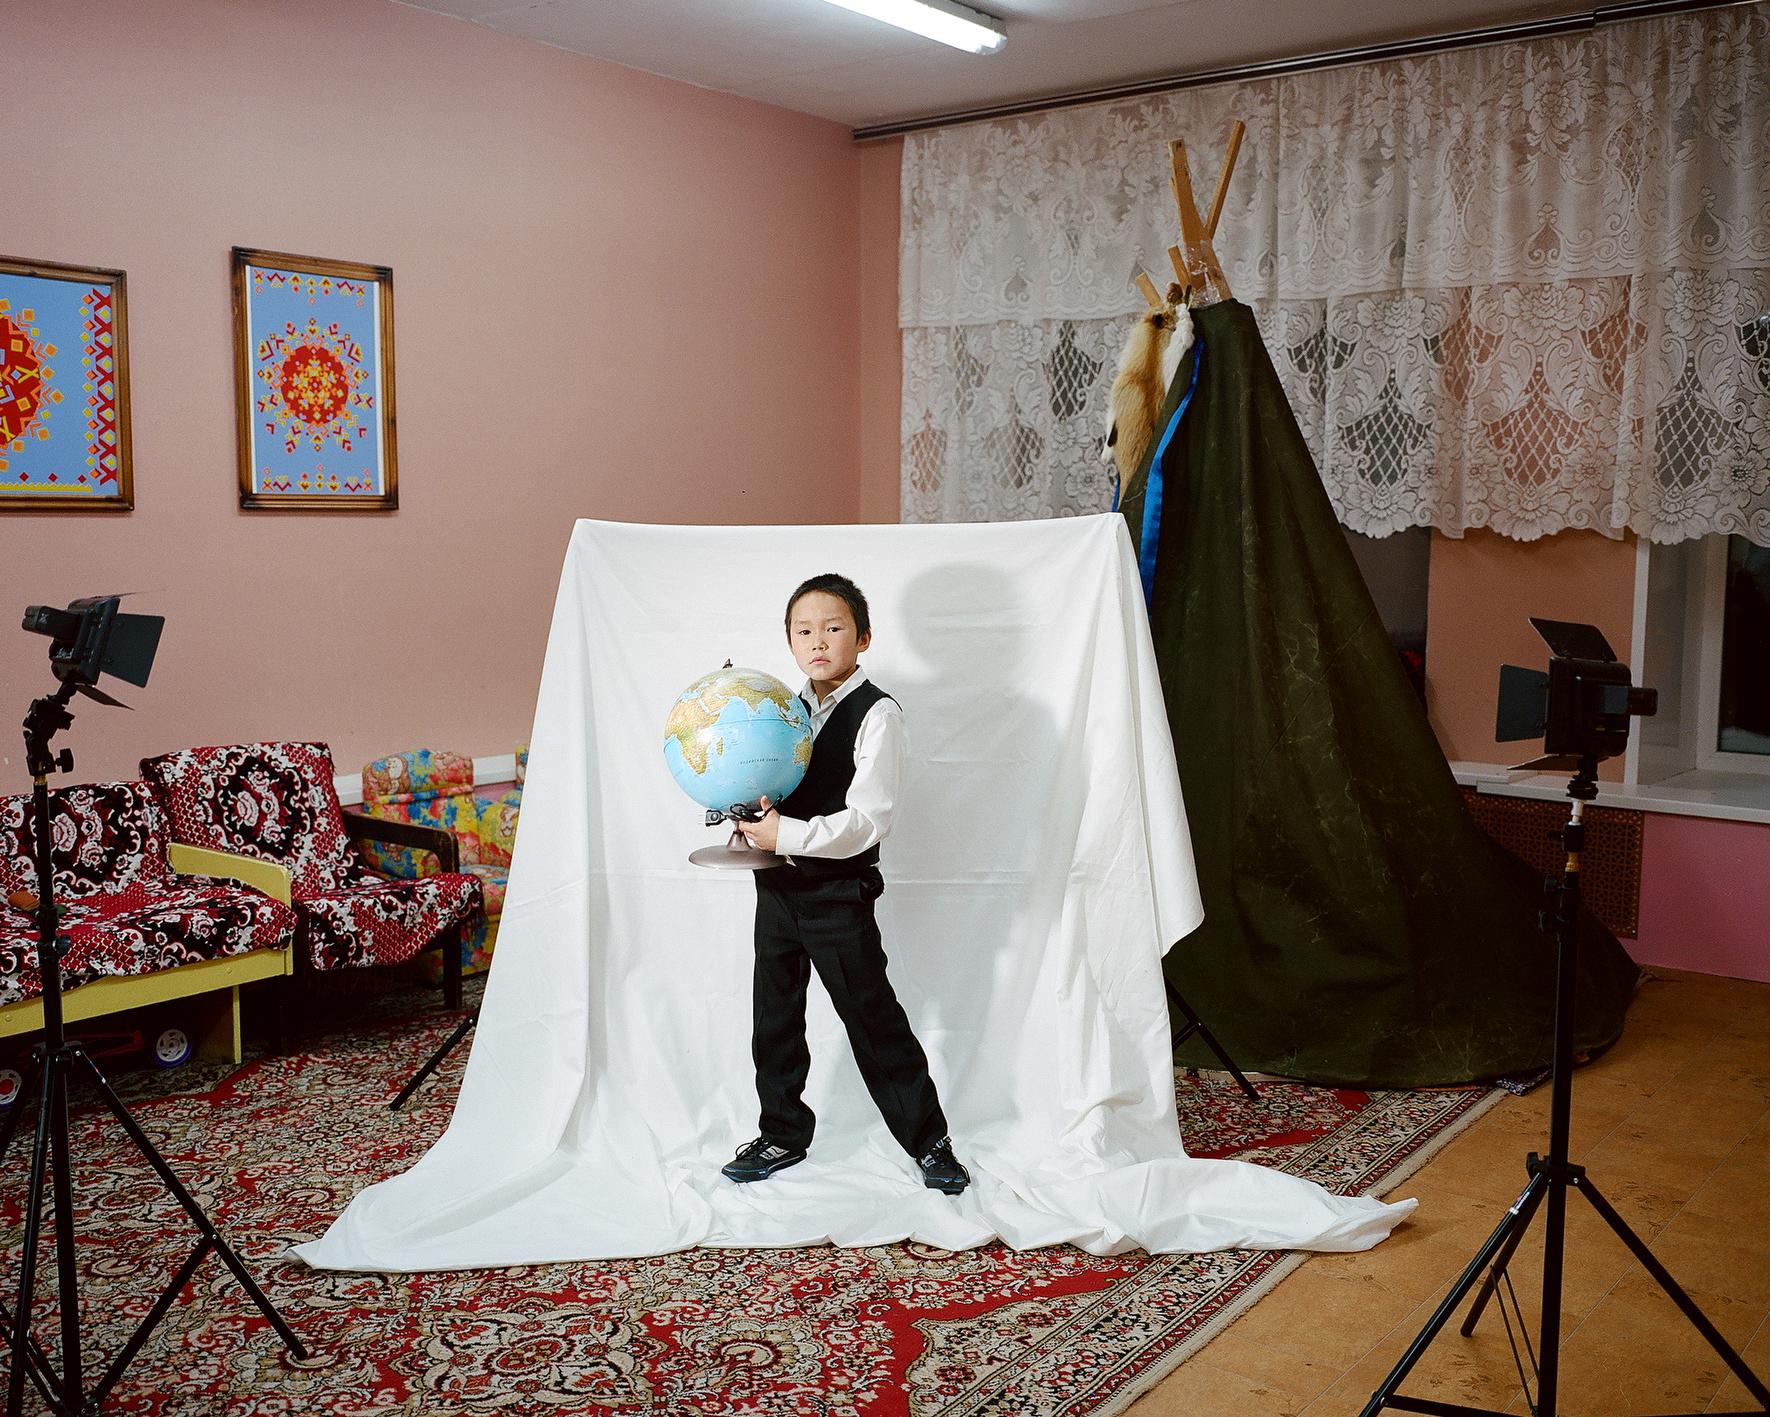 Toundra des Enfants: Nenet Enfants à l'Intérieur de la Russie Autochtones du pensionnat